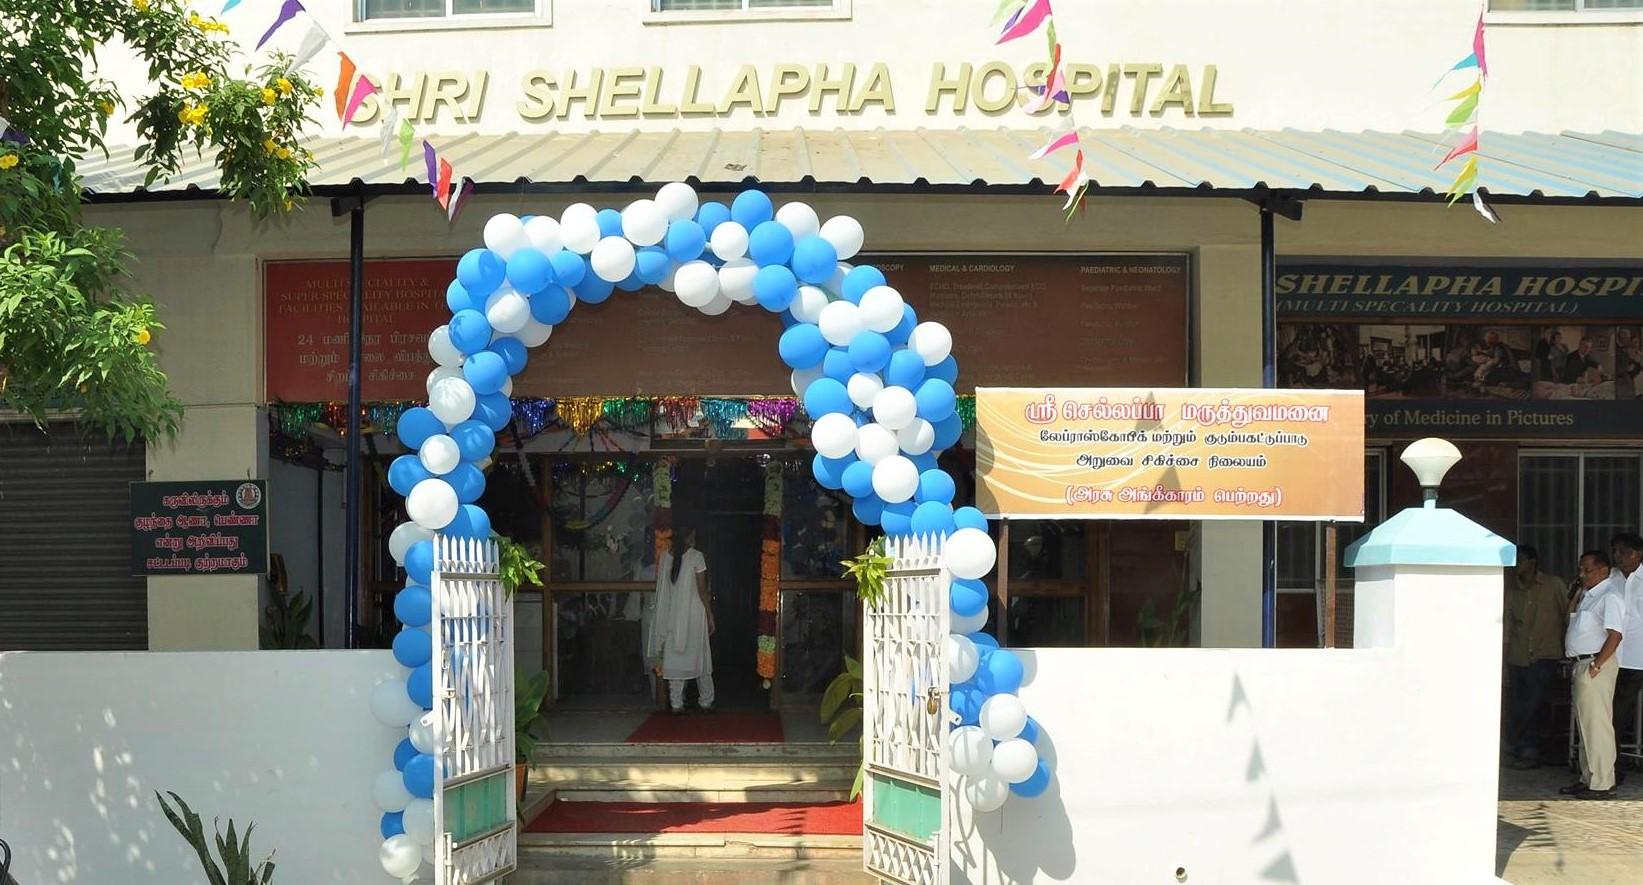 Shri Shellapha Hospital